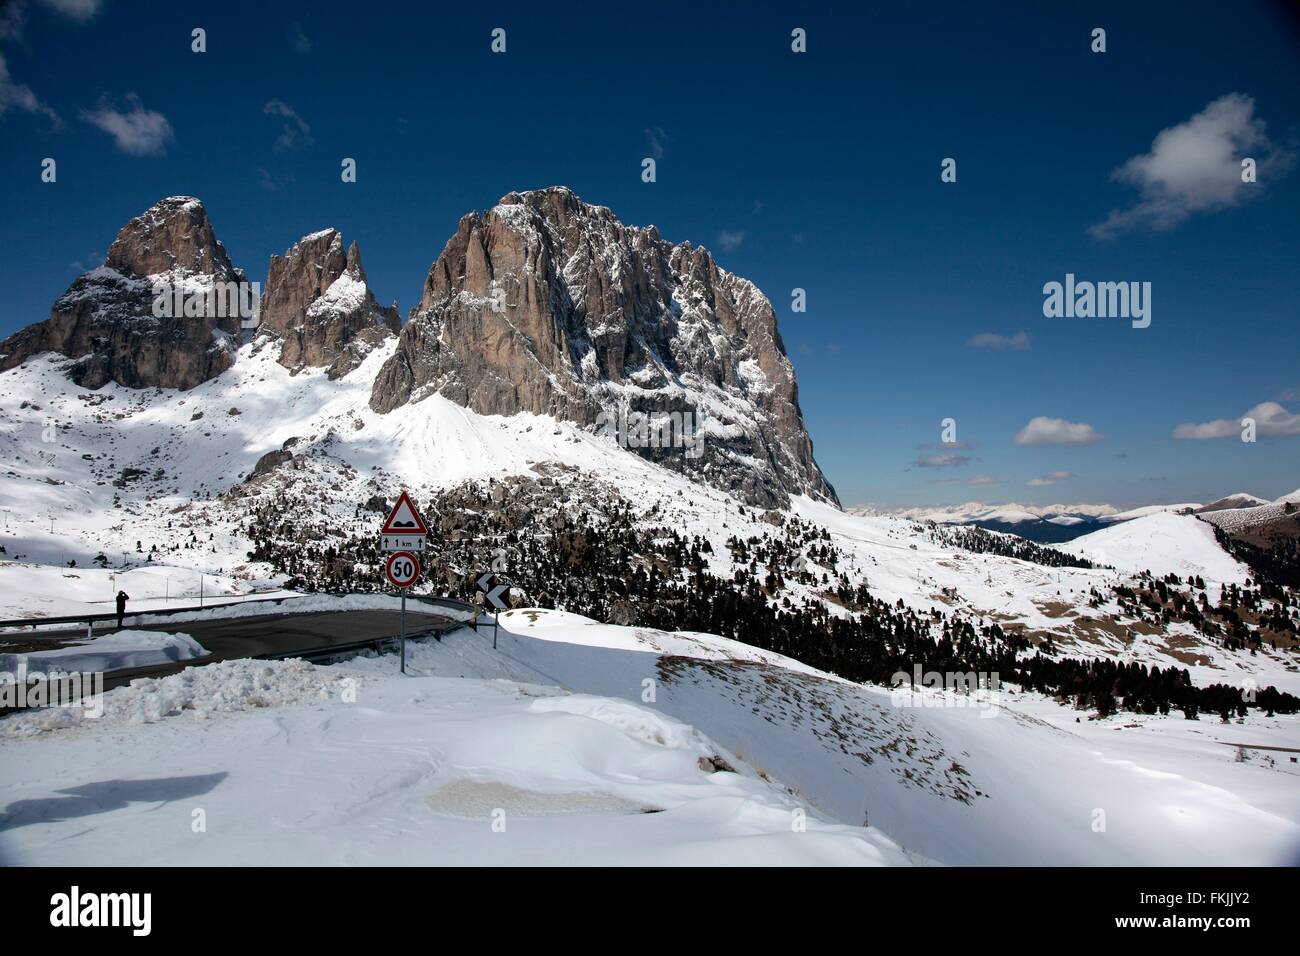 La sella è un 2240m italiano alto valico alpino delle Dolomiti. Il Passo Sella è situato a circa 33 km da Bolzano. Passo Sella, Trentino Alto Adige, Alto Adige, Italia, Europa Data: 17 Aprile 2012 Foto Stock